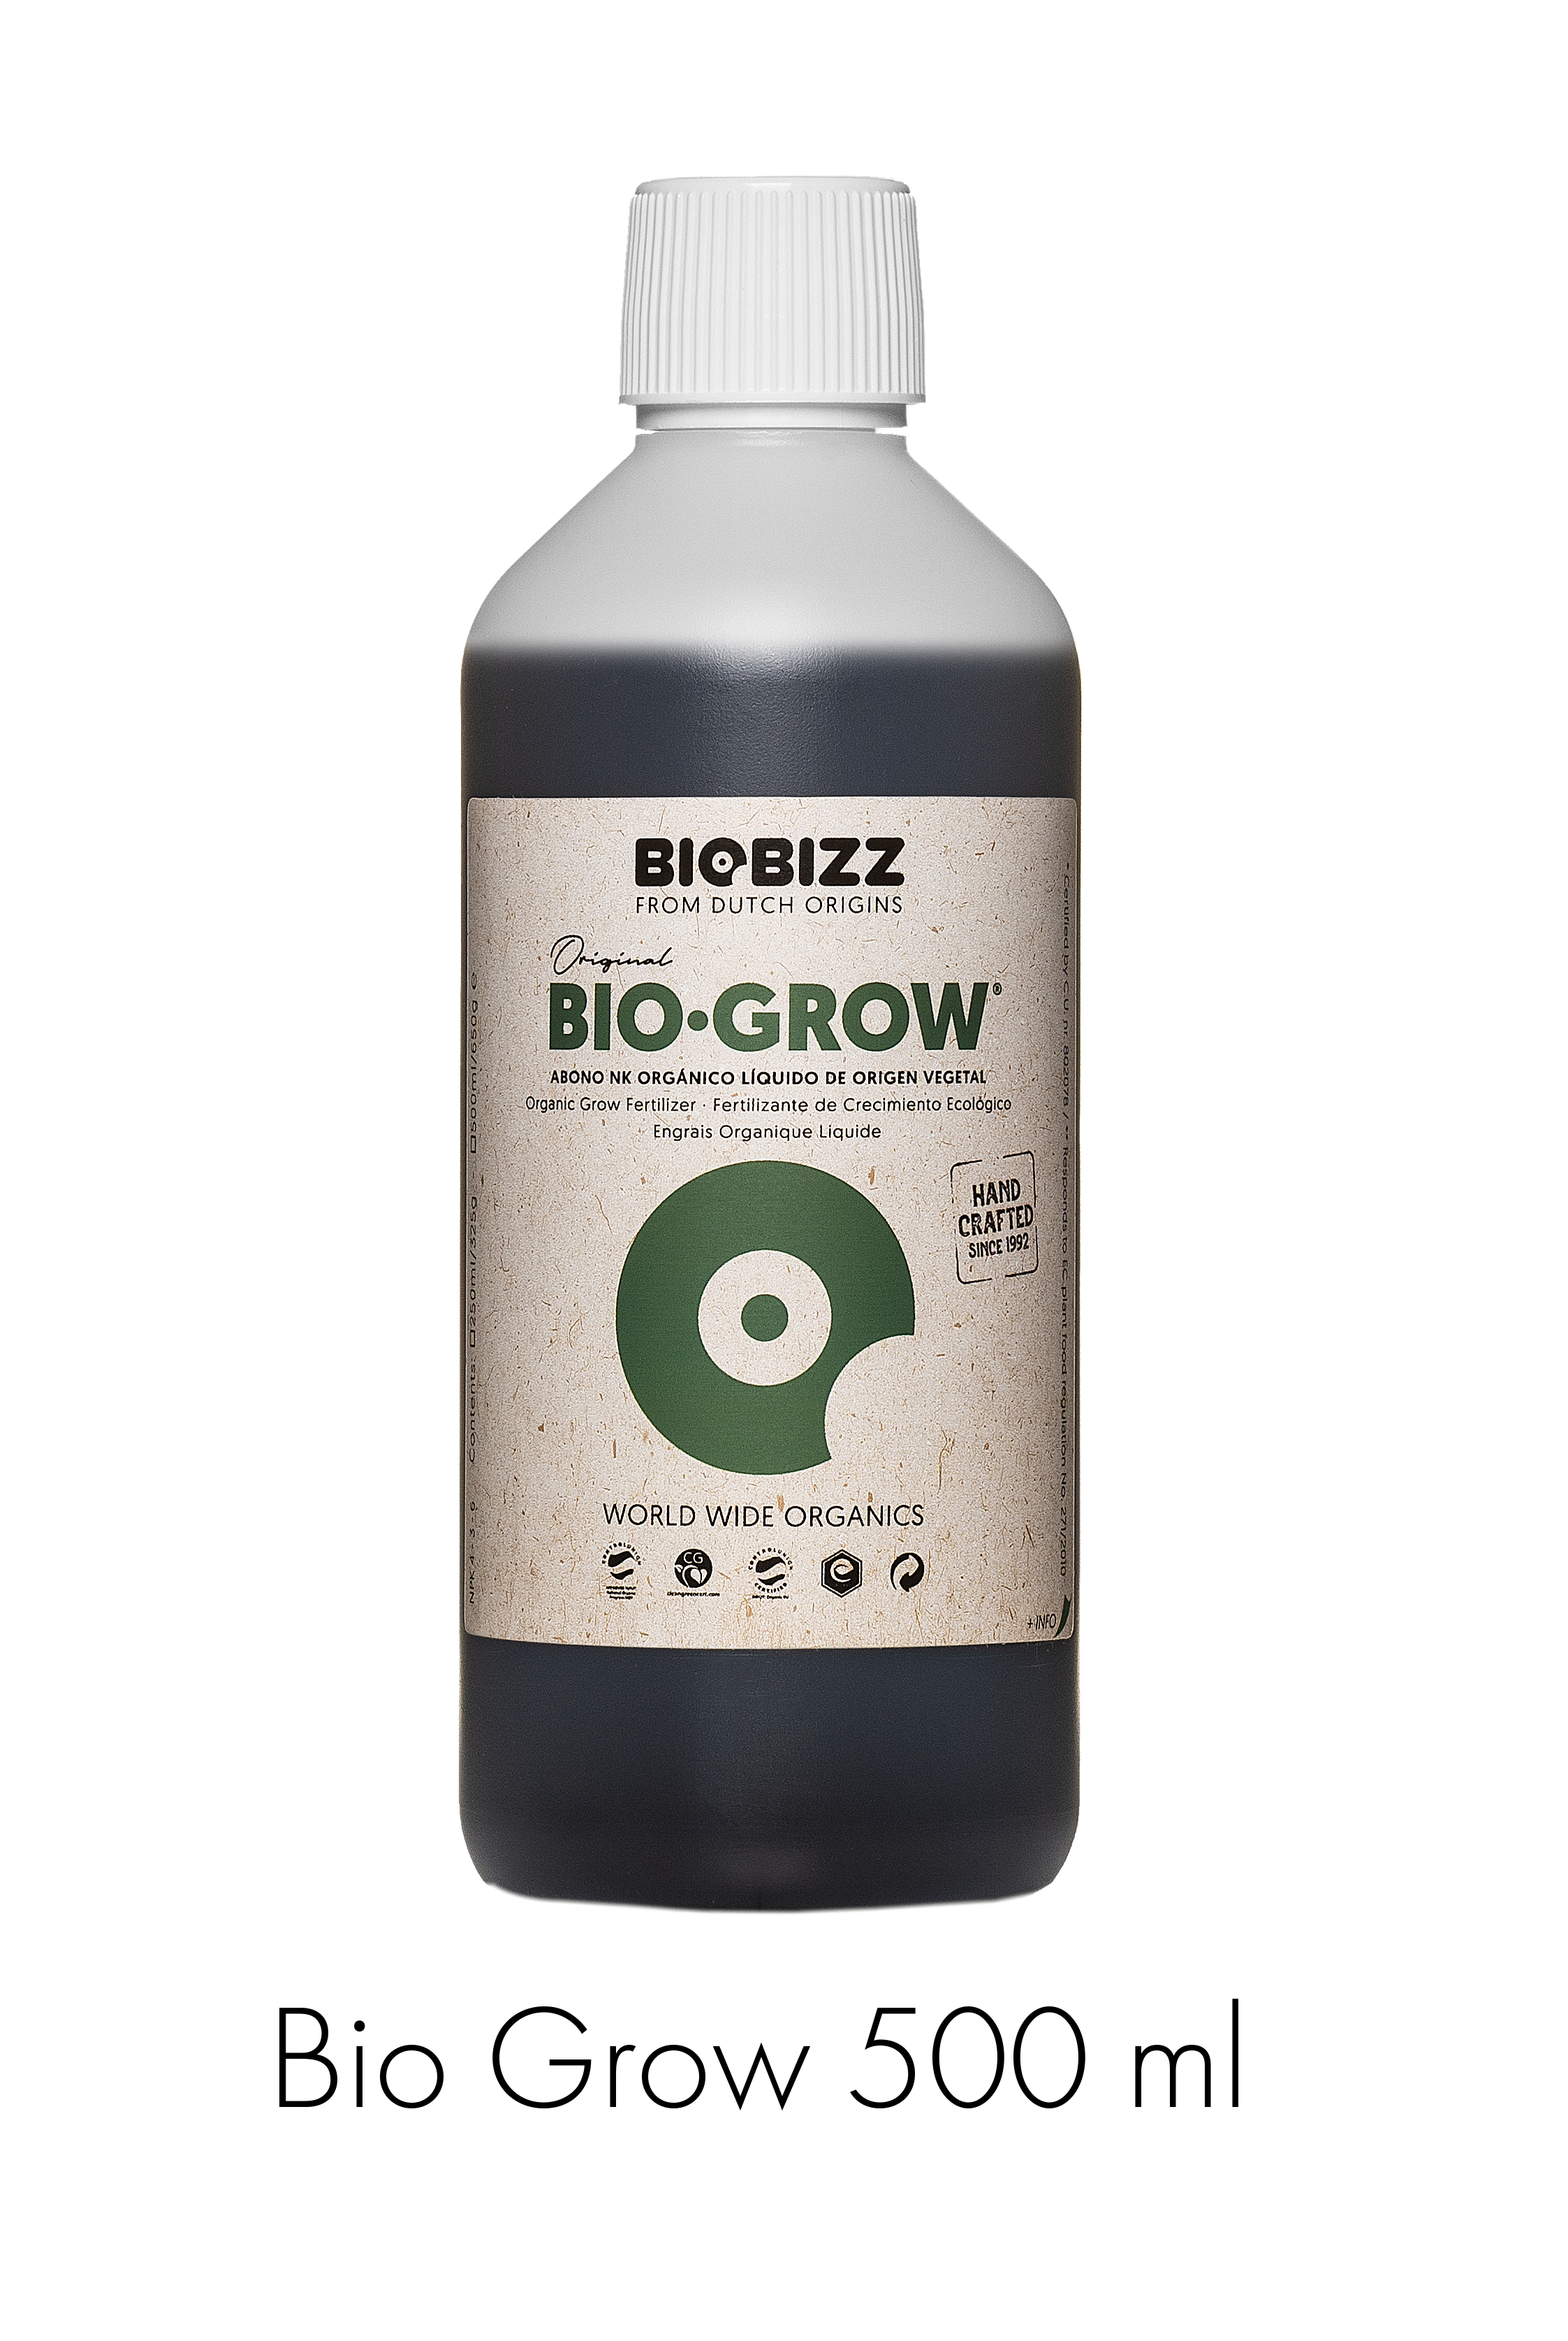 BioBizz Bio Grow 5 l